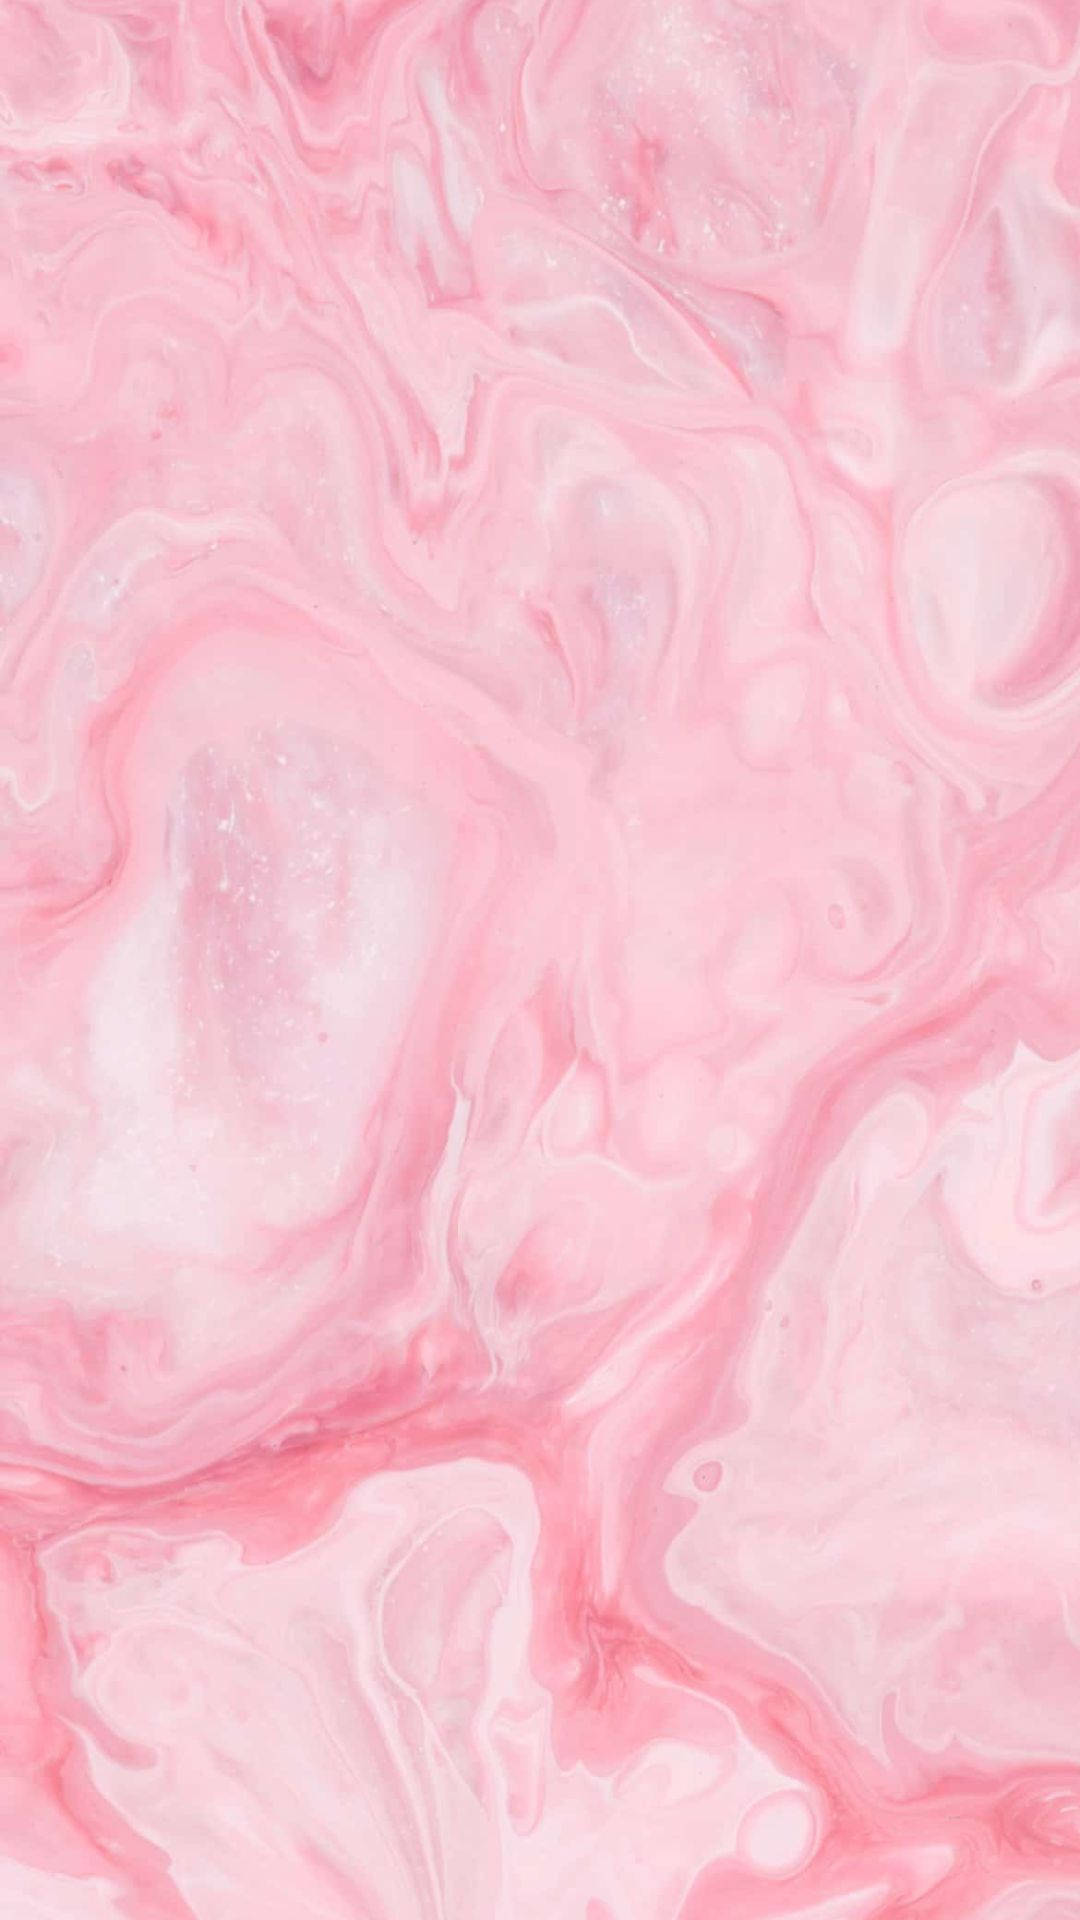 Aesthetic Pink Liquid Wallpaper